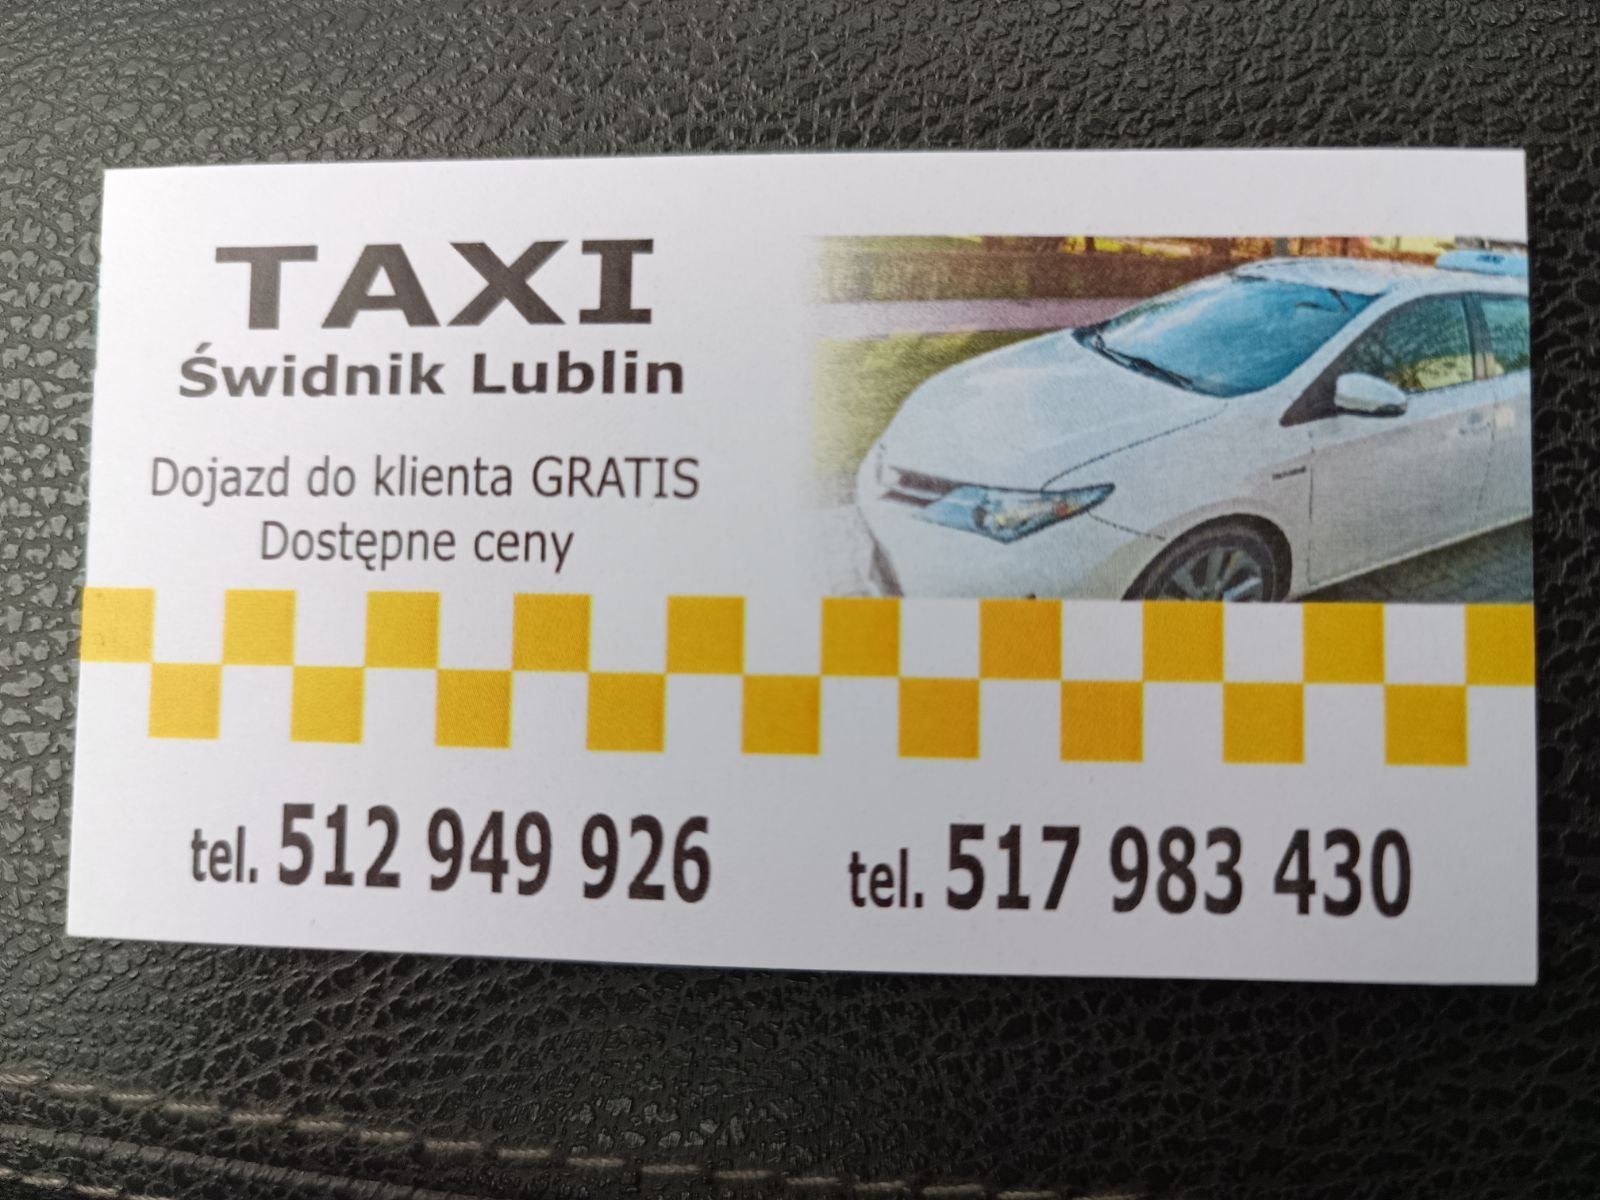 Taxi Kostek |Taxi Świdnik| Taksówki Świdnik - Lublin